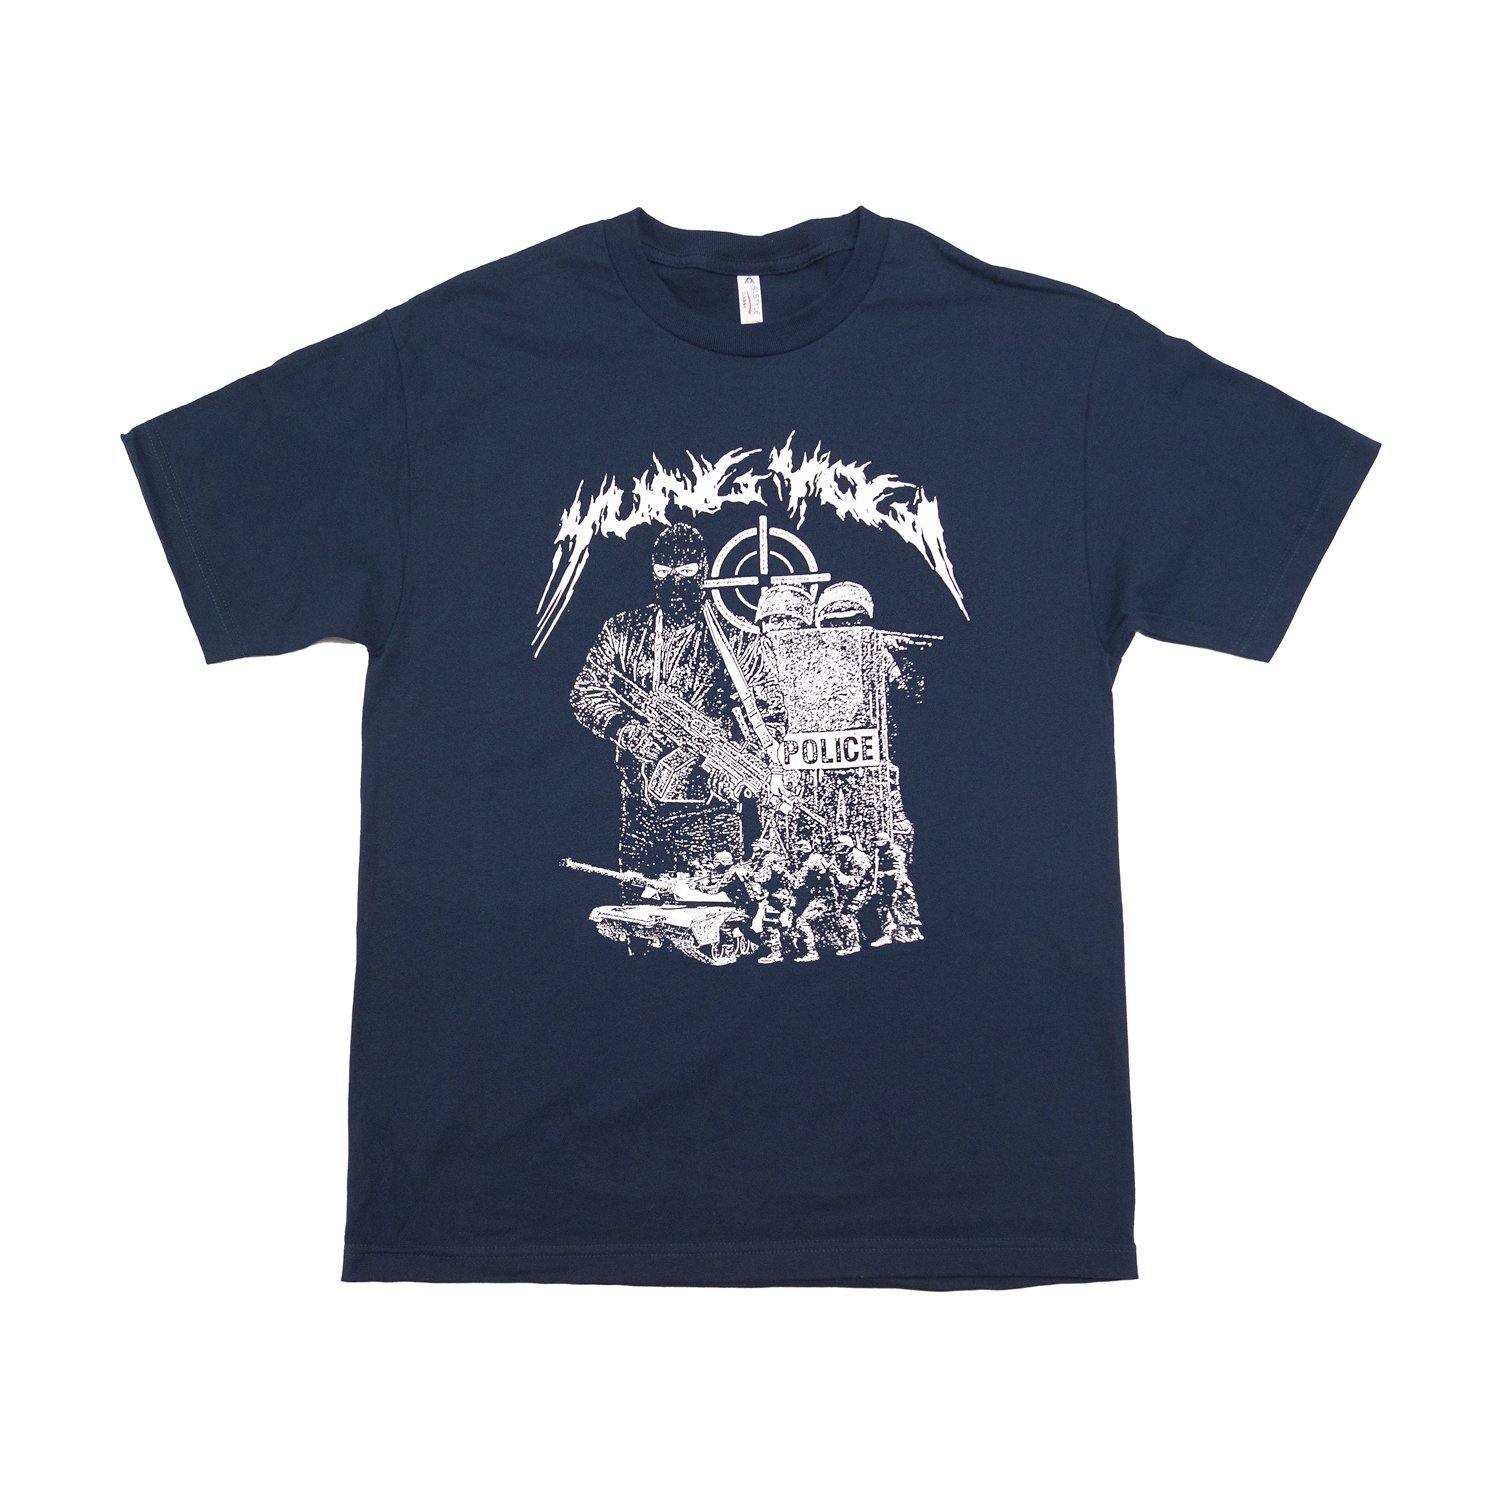 Buy – Yung Yogi "War" Shirt – Band & Music Merch – Cold Cuts Merch